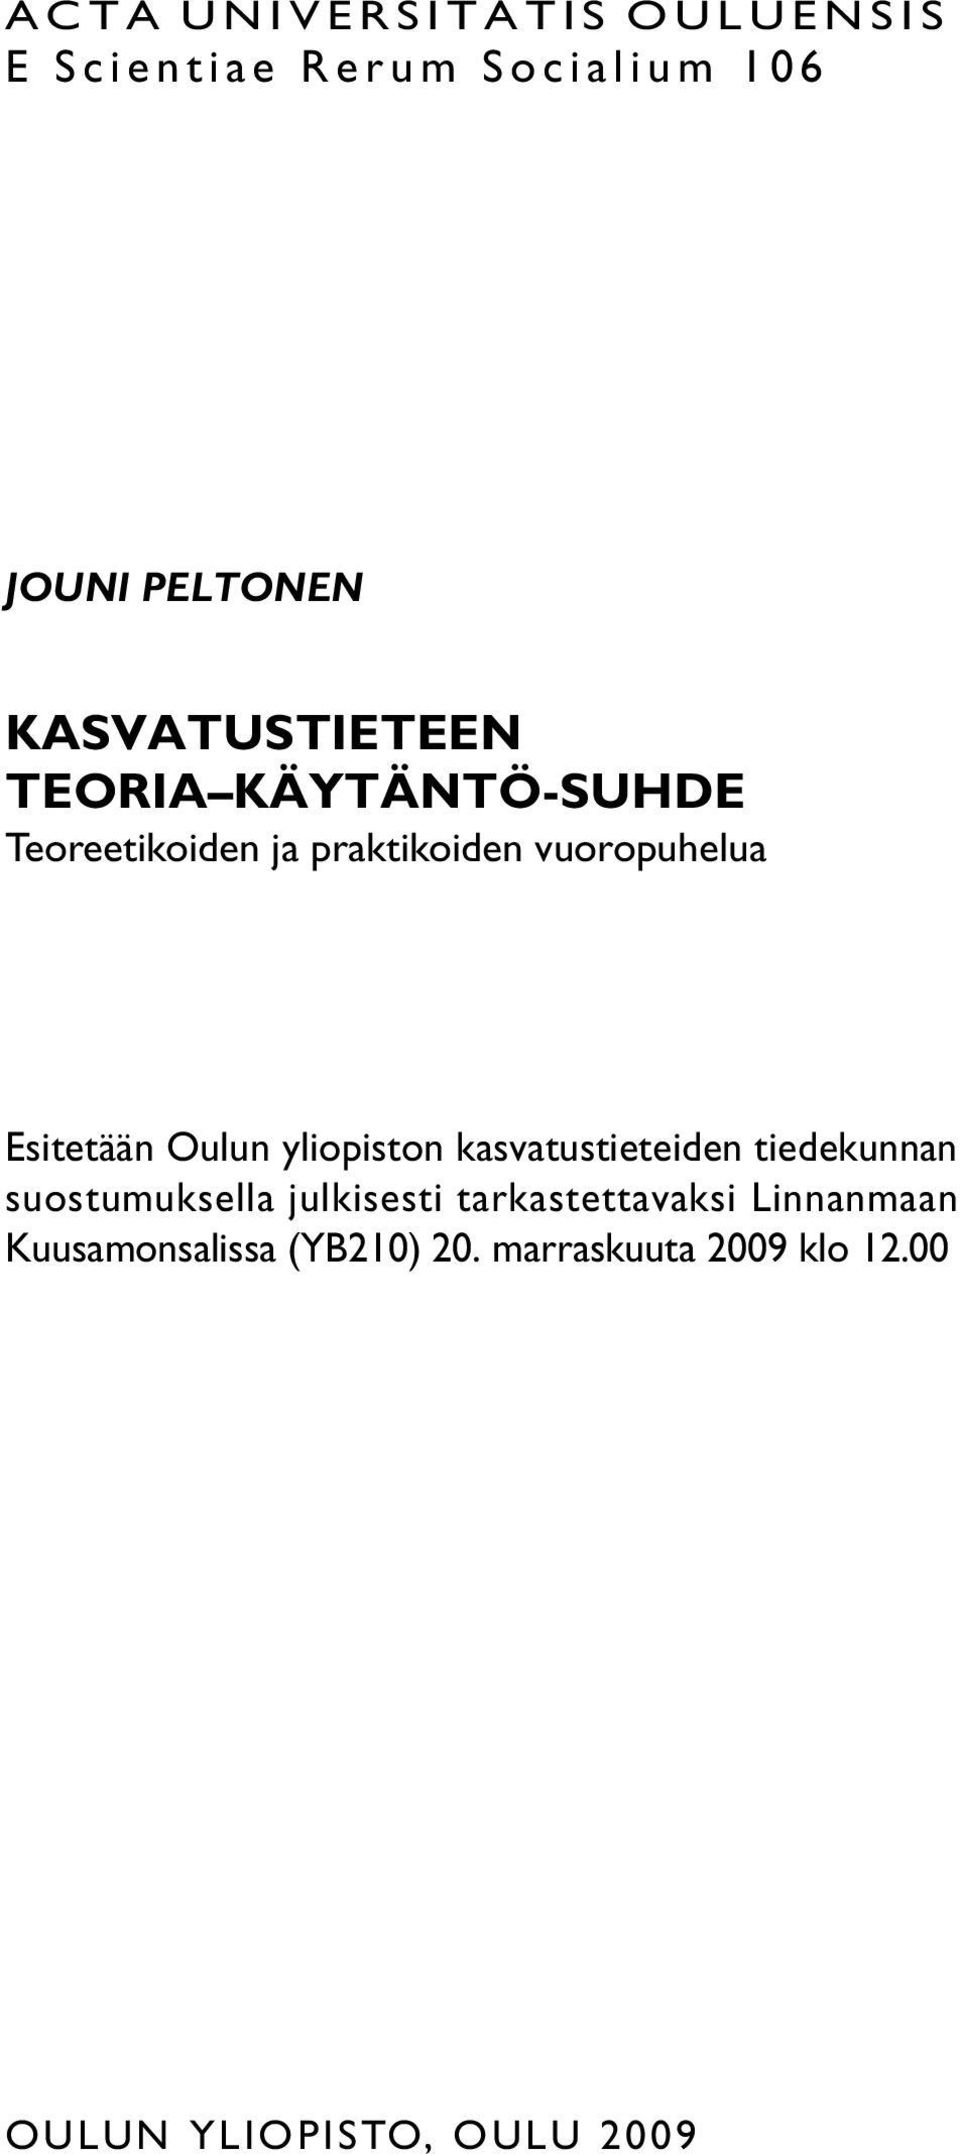 Esitetään Oulun yliopiston kasvatustieteiden tiedekunnan suostumuksella julkisesti